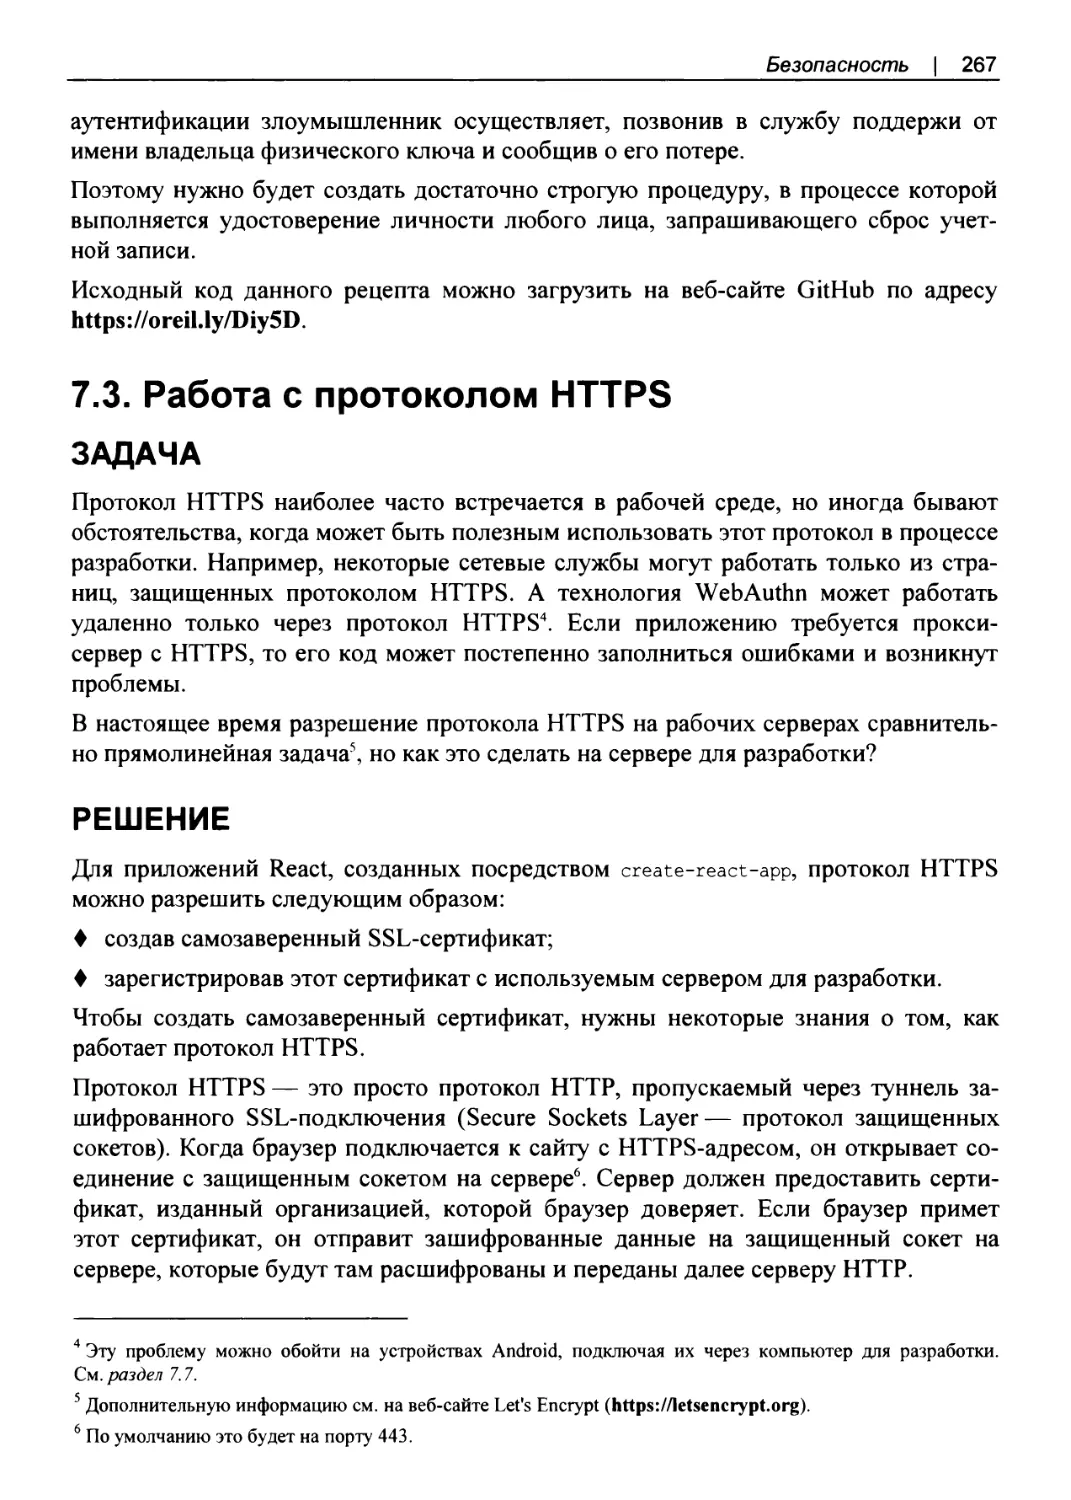 7.3. Работа с протоколом HTTPS
РЕШЕНИЕ